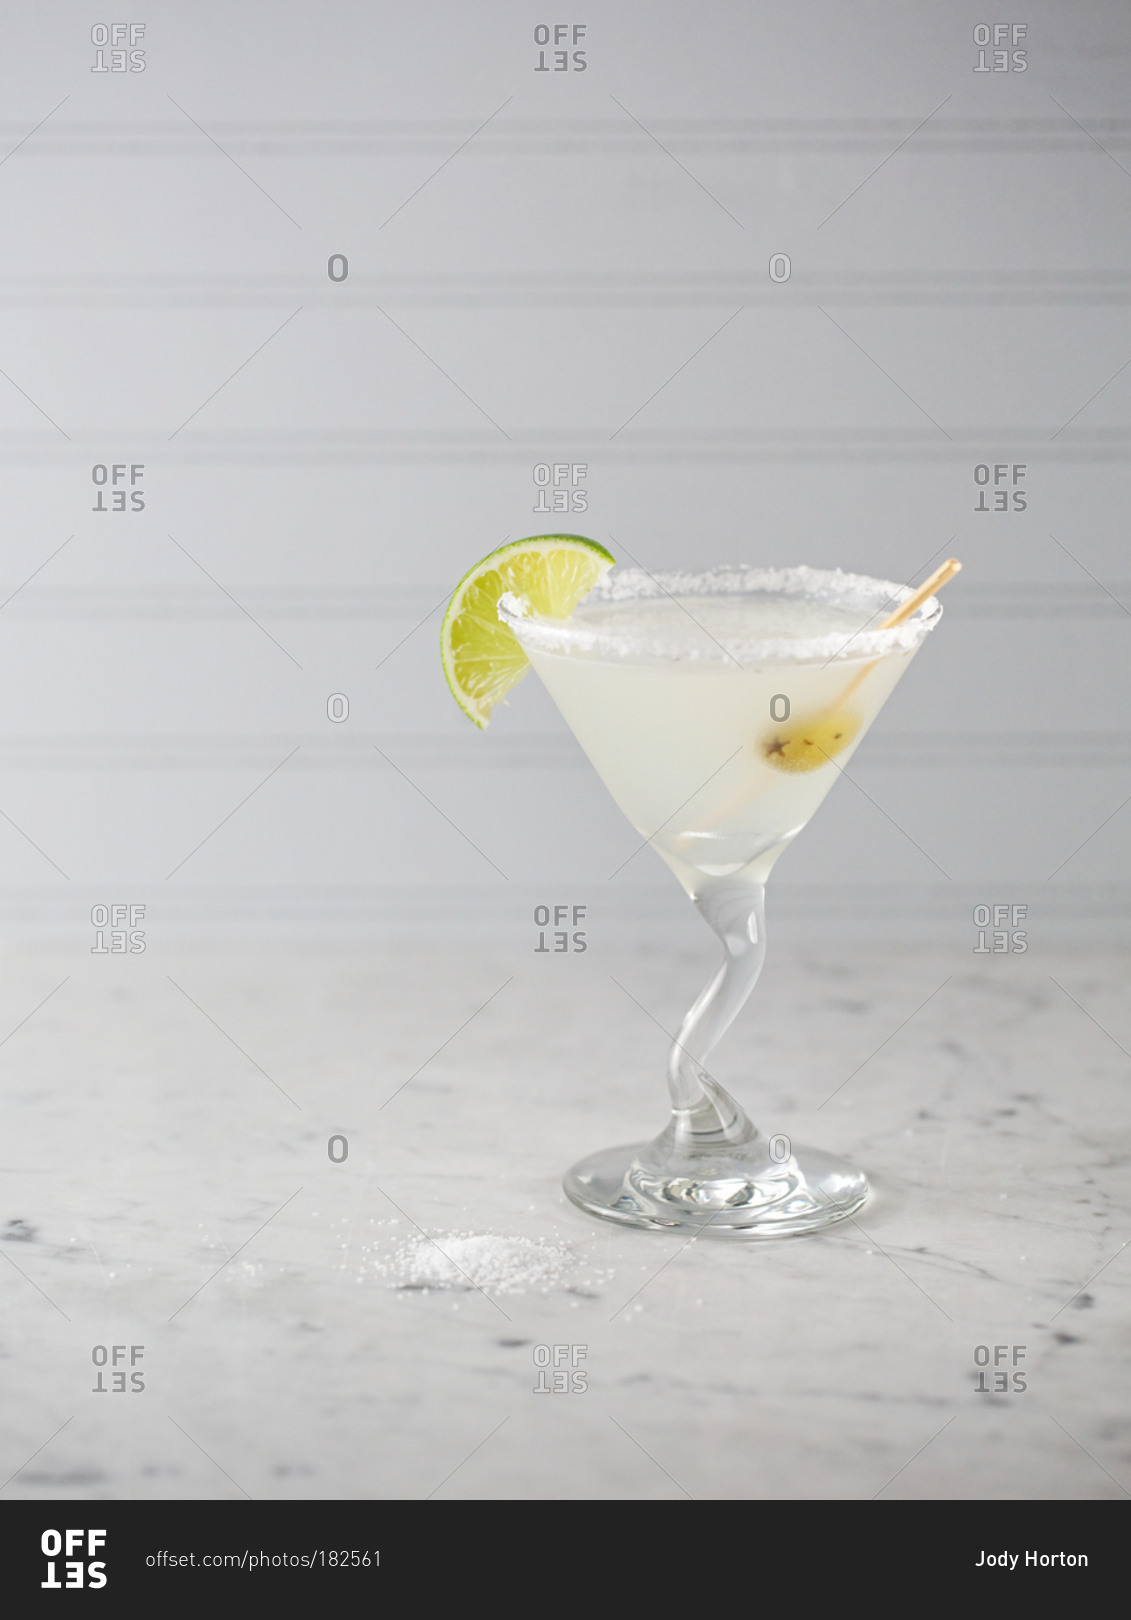 Cocktail served in a salt-rimmed glass